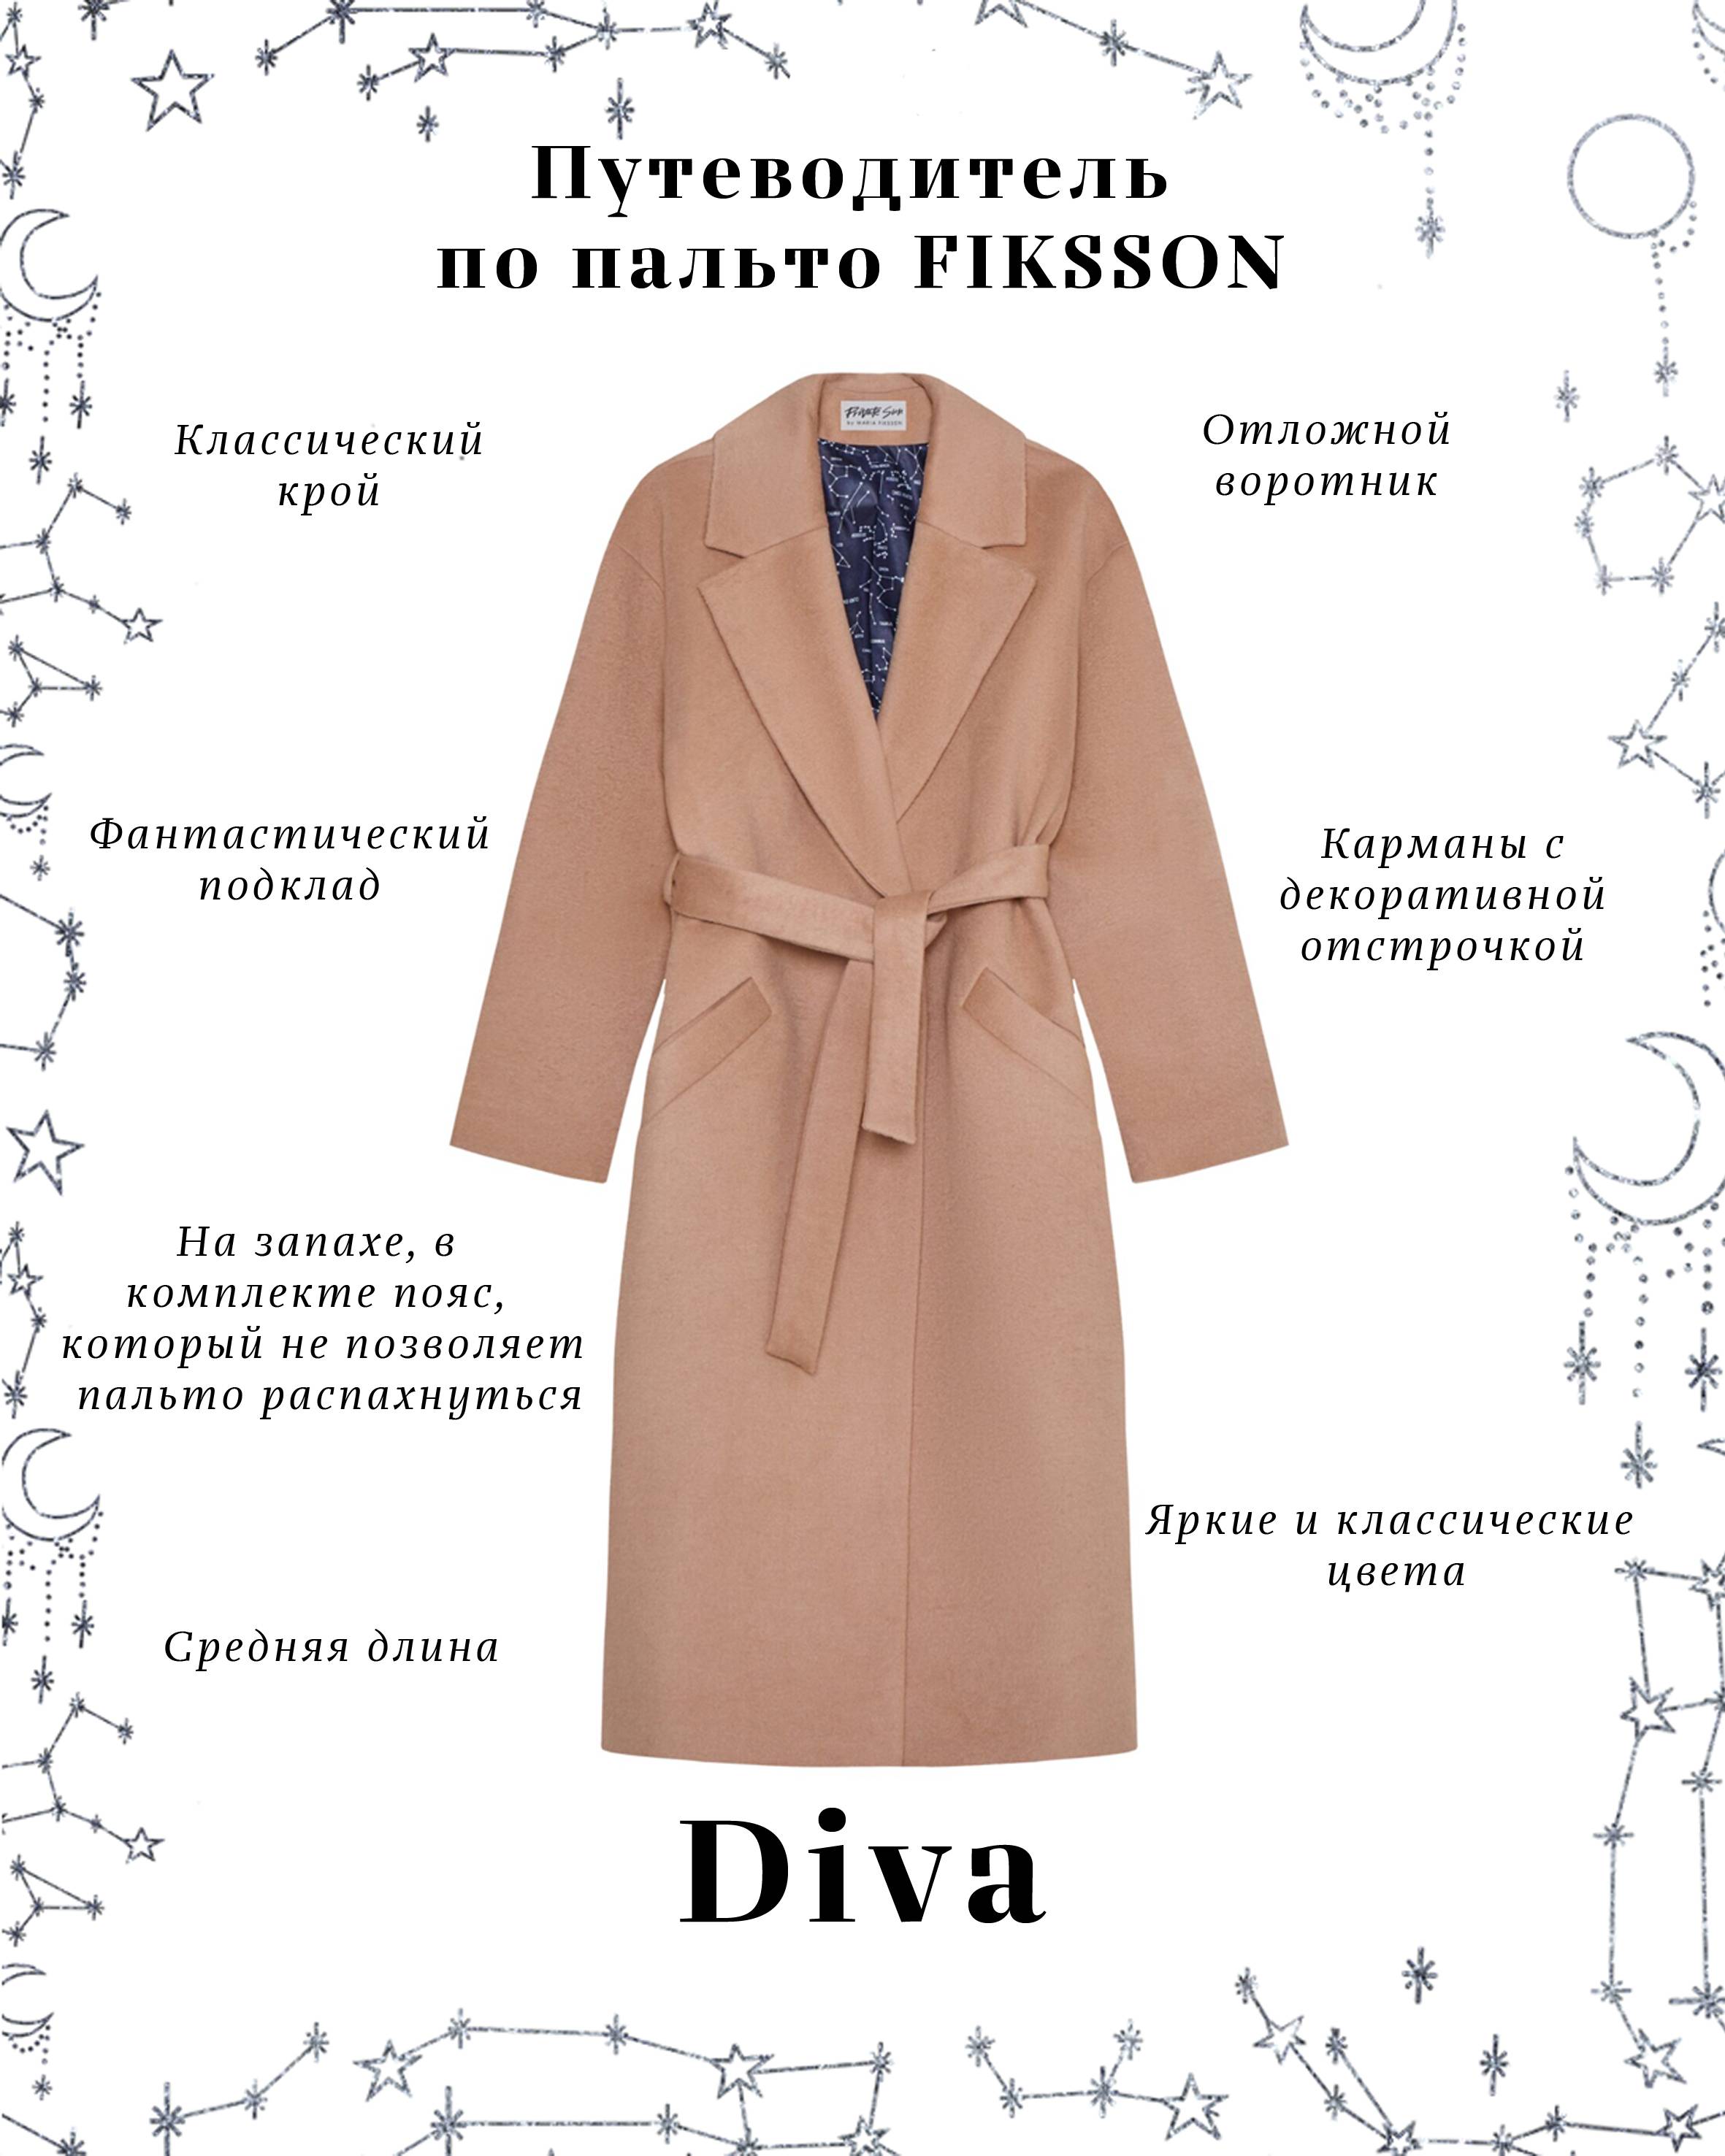 Стильное пальто для невысоких девушек: основные правила выбора подходящего фасона и длины изделия